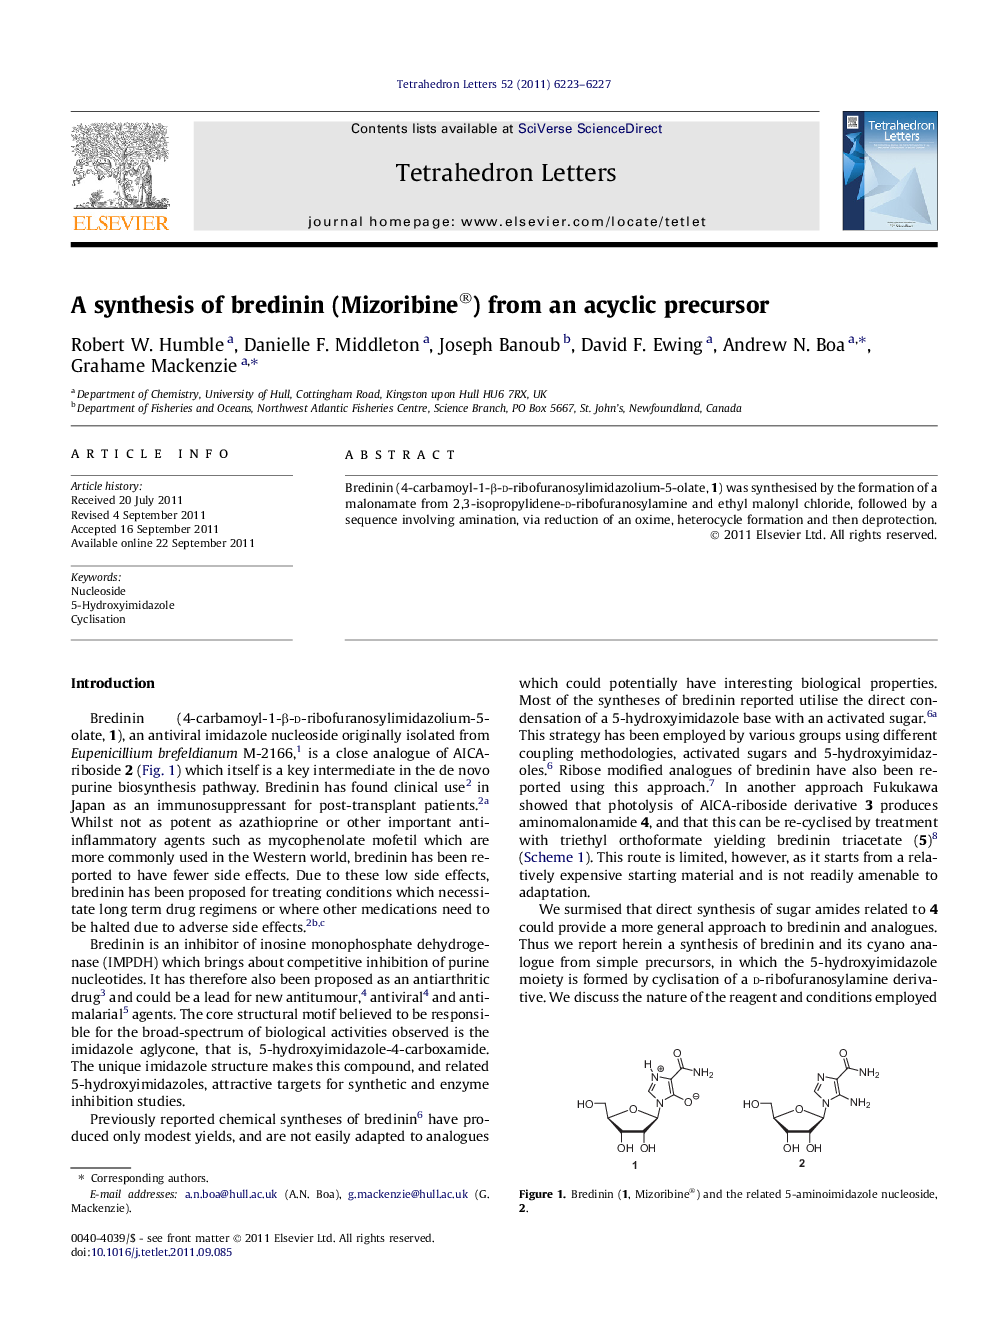 A synthesis of bredinin (Mizoribine®) from an acyclic precursor